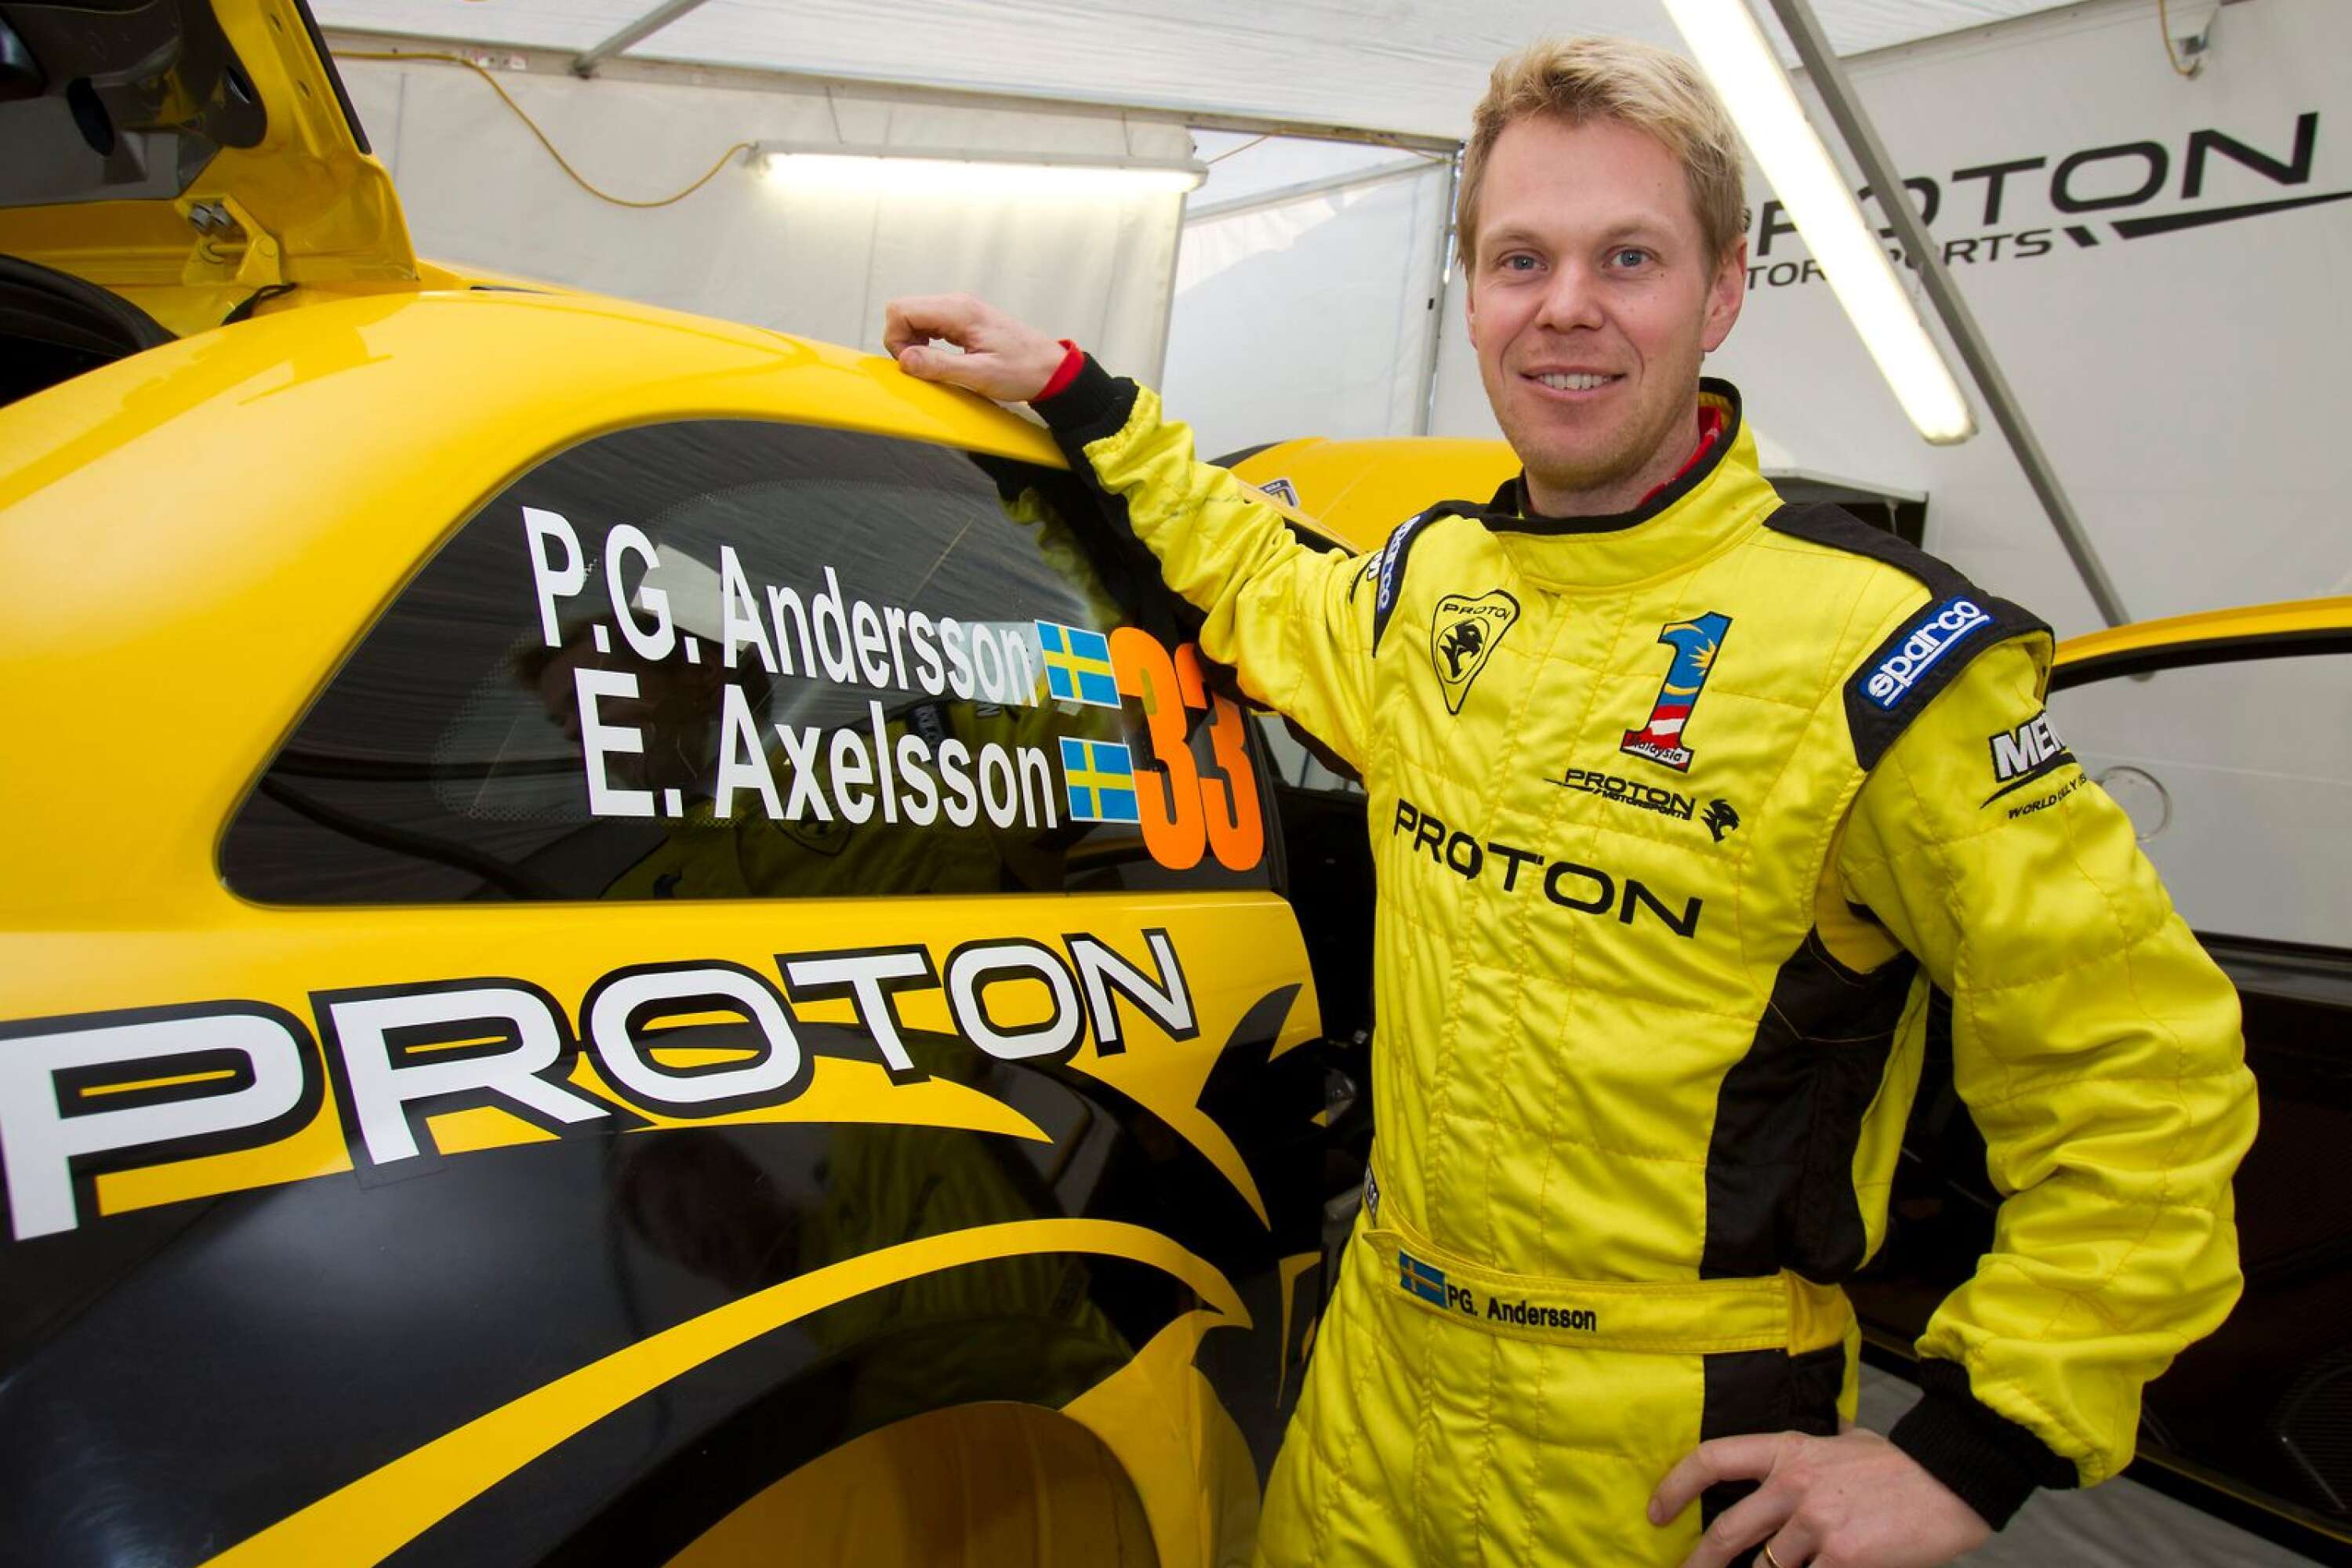 Här är P-G senast det begav sig i Svenska rallyt, 2012. Han körde Proton, med Emil Axelsson som kartläsare, och vann SWRC-klassen.